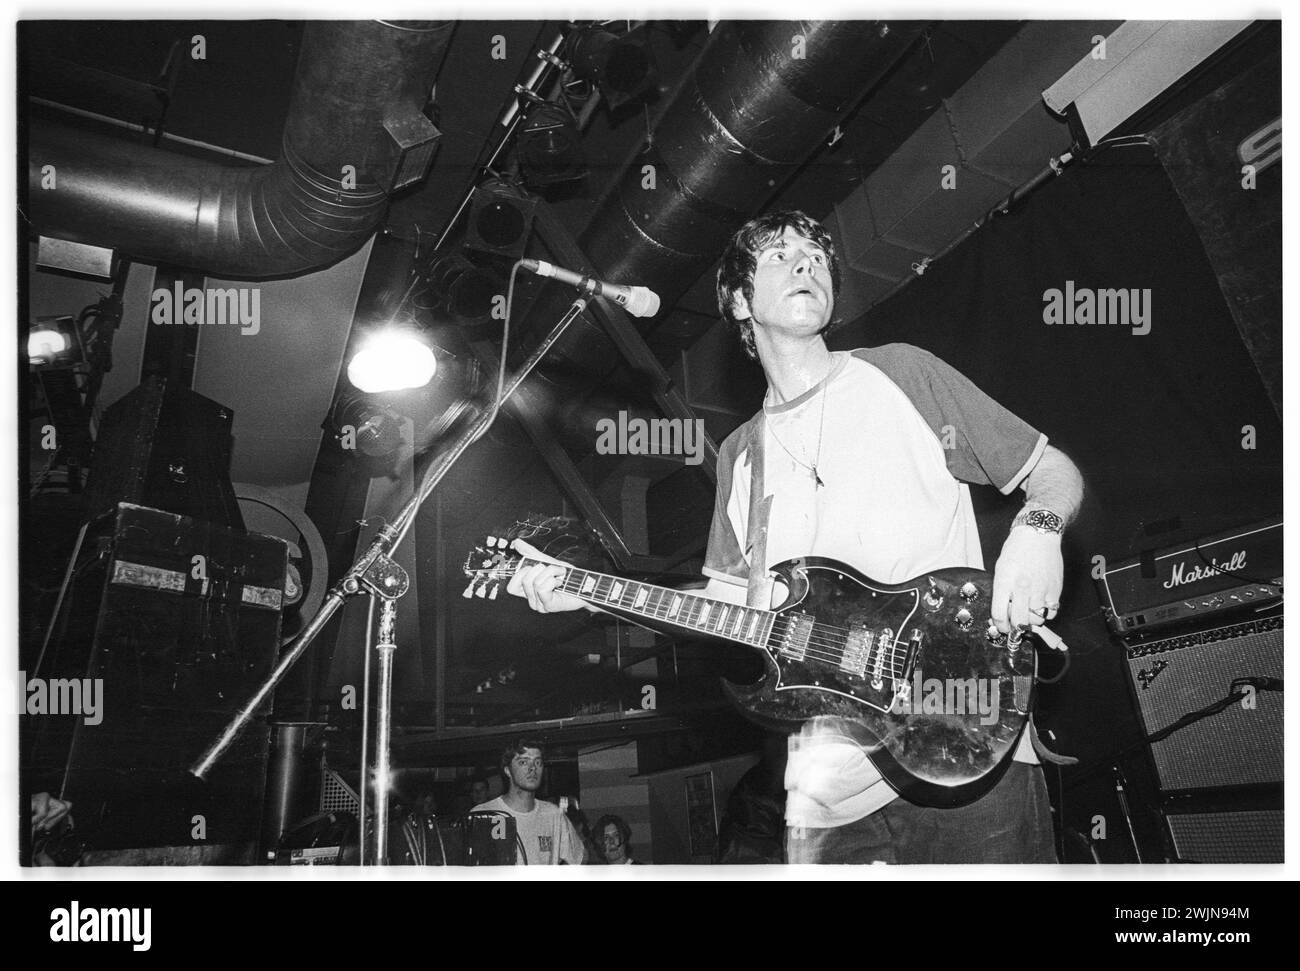 SUPER FURRY ANIMALS, FUZZY LOGIC TOUR, 1996: Un giovane Gruff Rhys della band gallese Super Furry Animals che suonava al terminal dell'Università di Cardiff durante il Fuzzy Logic Tour a Cardiff, Galles, Regno Unito, il 12 maggio 1996. Foto: Rob Watkins. INFO: Super Furry Animals, un gruppo musicale gallese di rock psichedelico formato nel 1993, ha portato un sound eclettico che mescola elementi rock, pop ed elettronici. Album come "Radiator" e "Fuzzy Logic" hanno mostrato il loro approccio inventivo e sfidante al genere, consolidando il loro status di pionieri nella scena musicale alternativa. Foto Stock